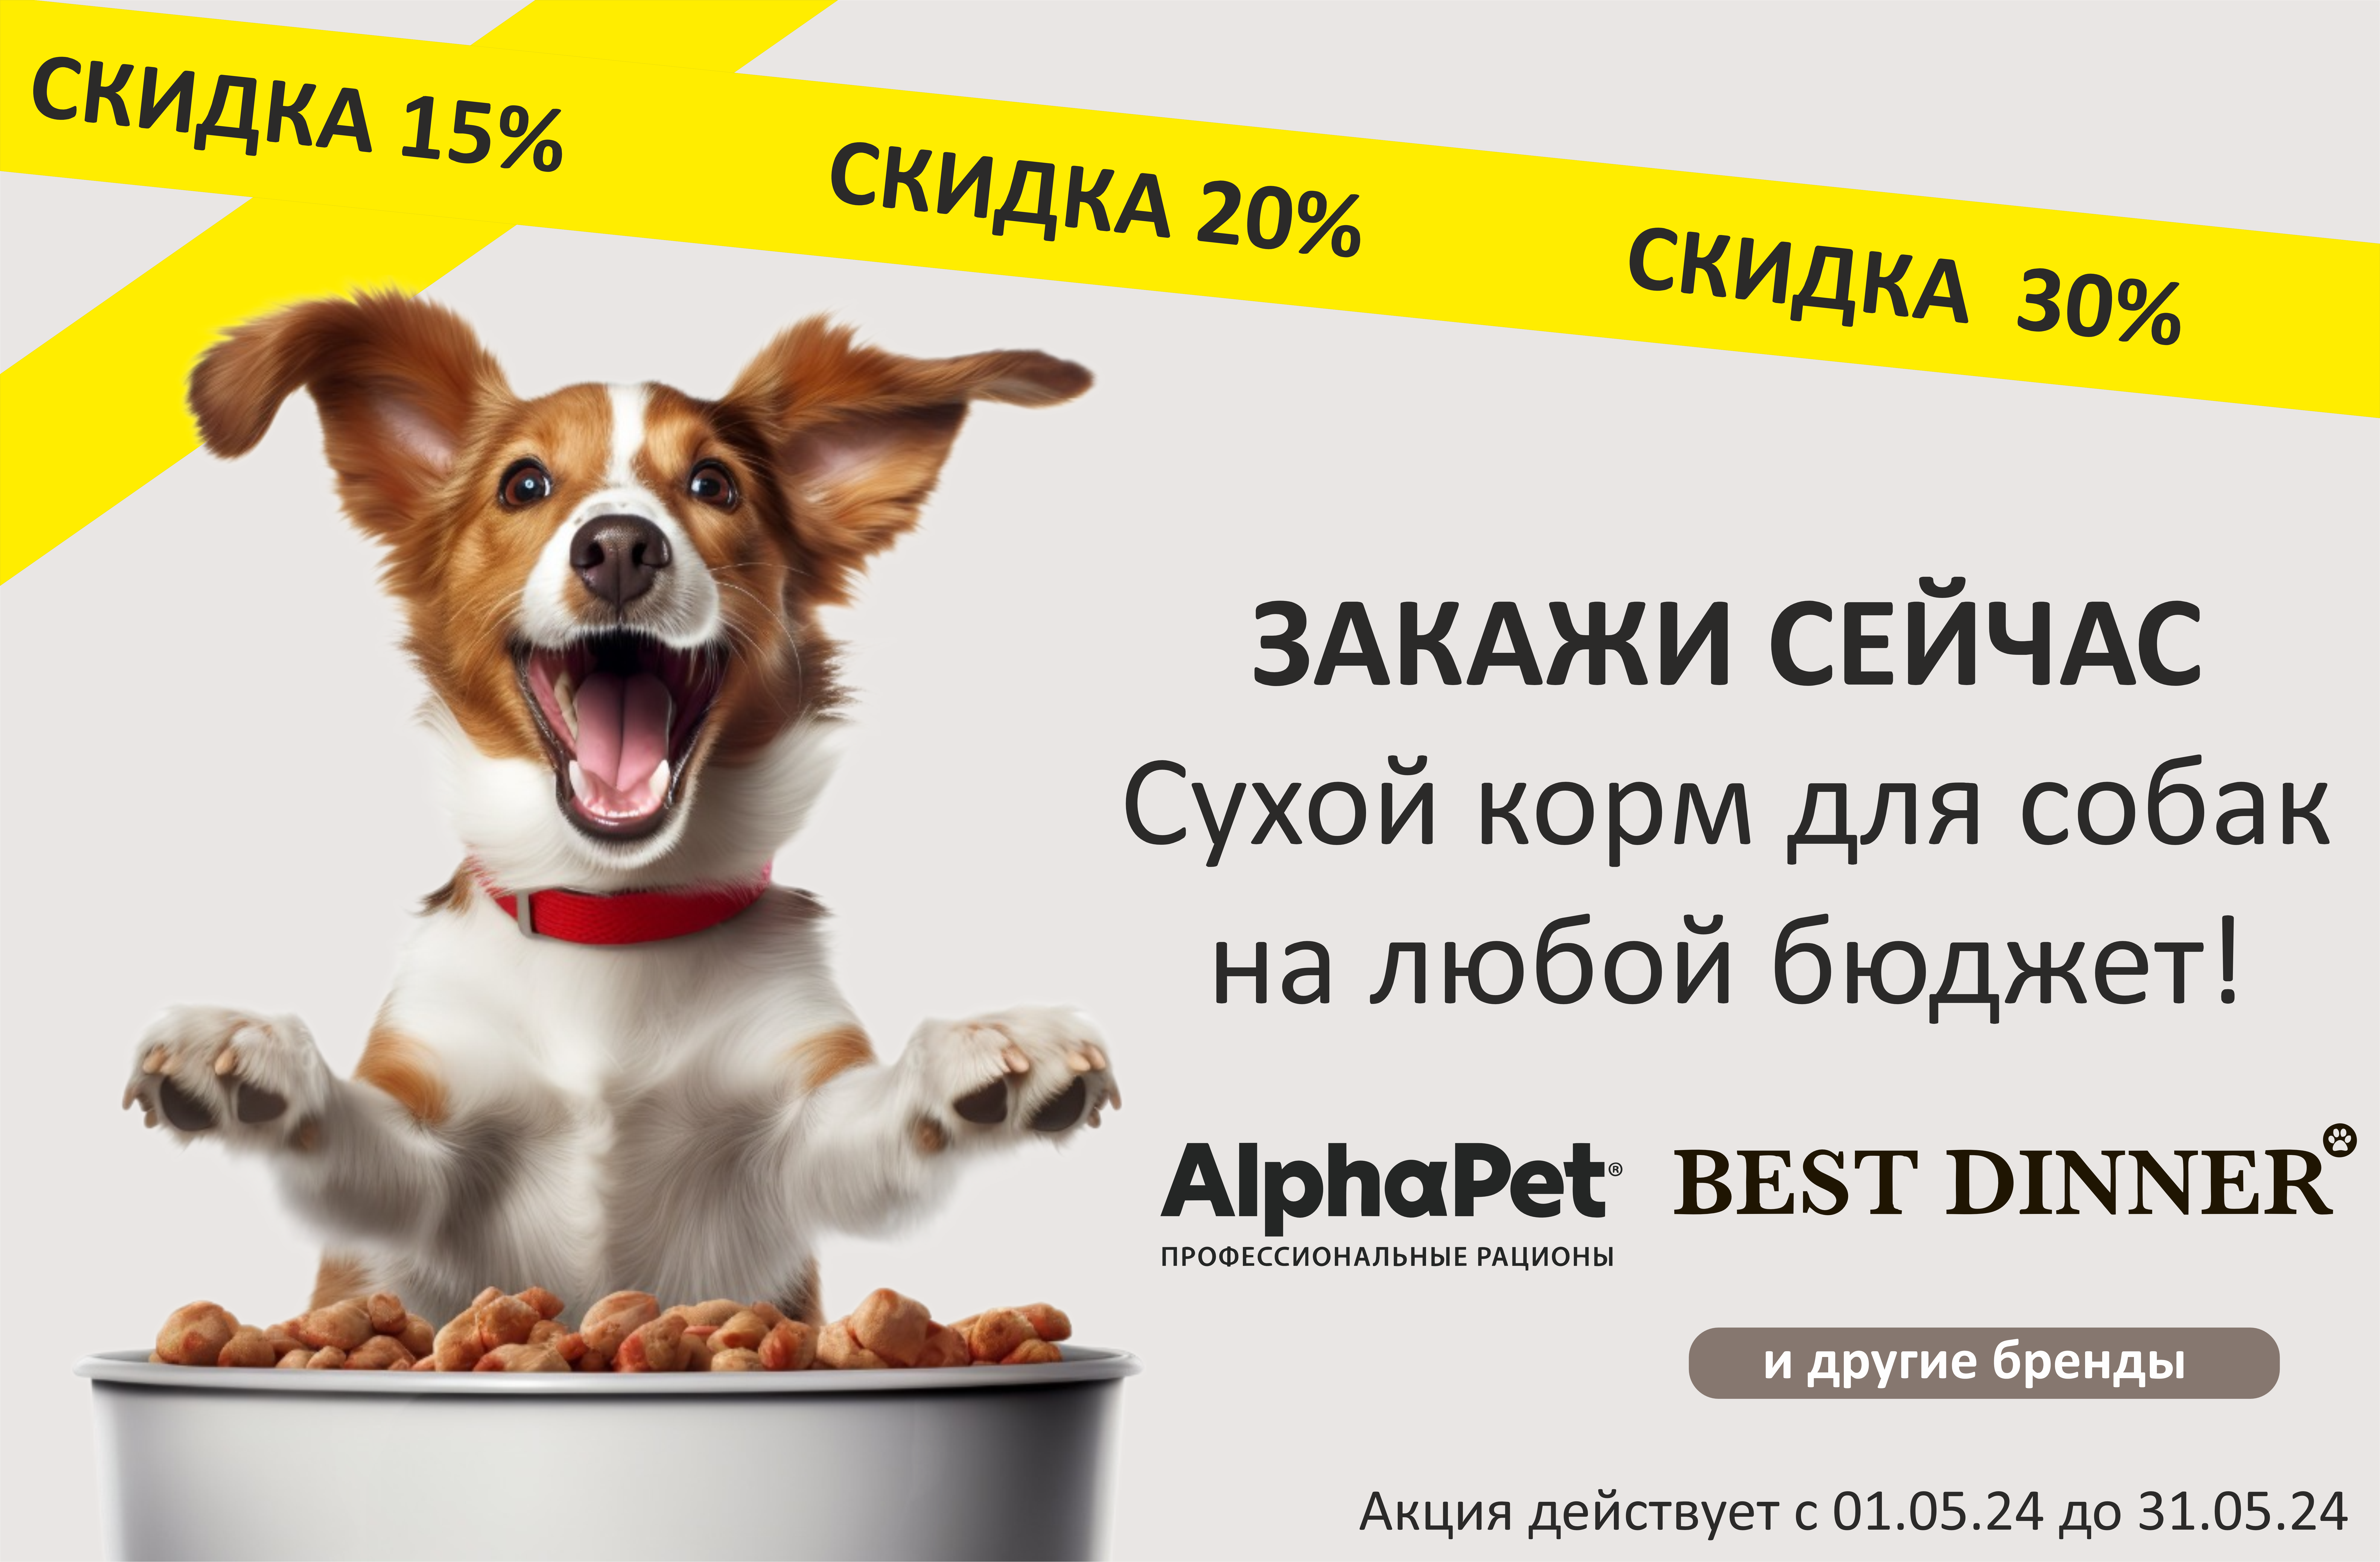 Сухой корм для собак со скидкой до 30%